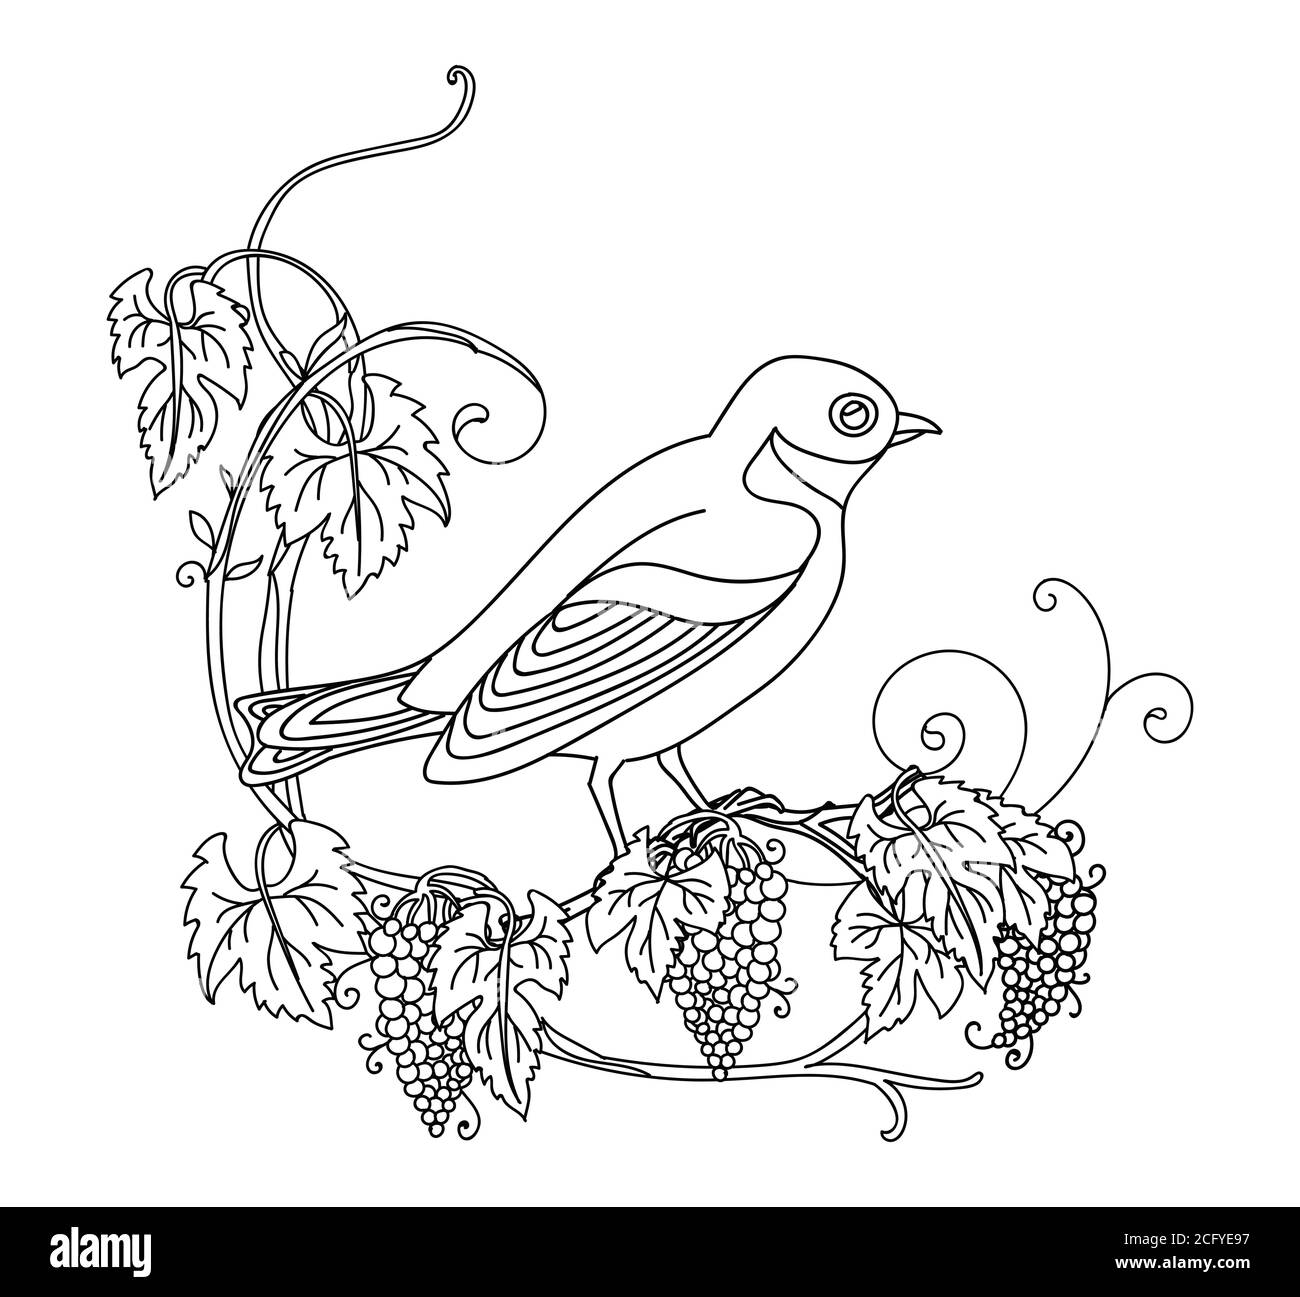 Contorno nero simpatico illustrazione uccello e uva. Immagine vettoriale a disegno lineare isolata in bianco. Immagine monocromatica disegnata a mano vettoriale per libro da colorare, Illustrazione Vettoriale